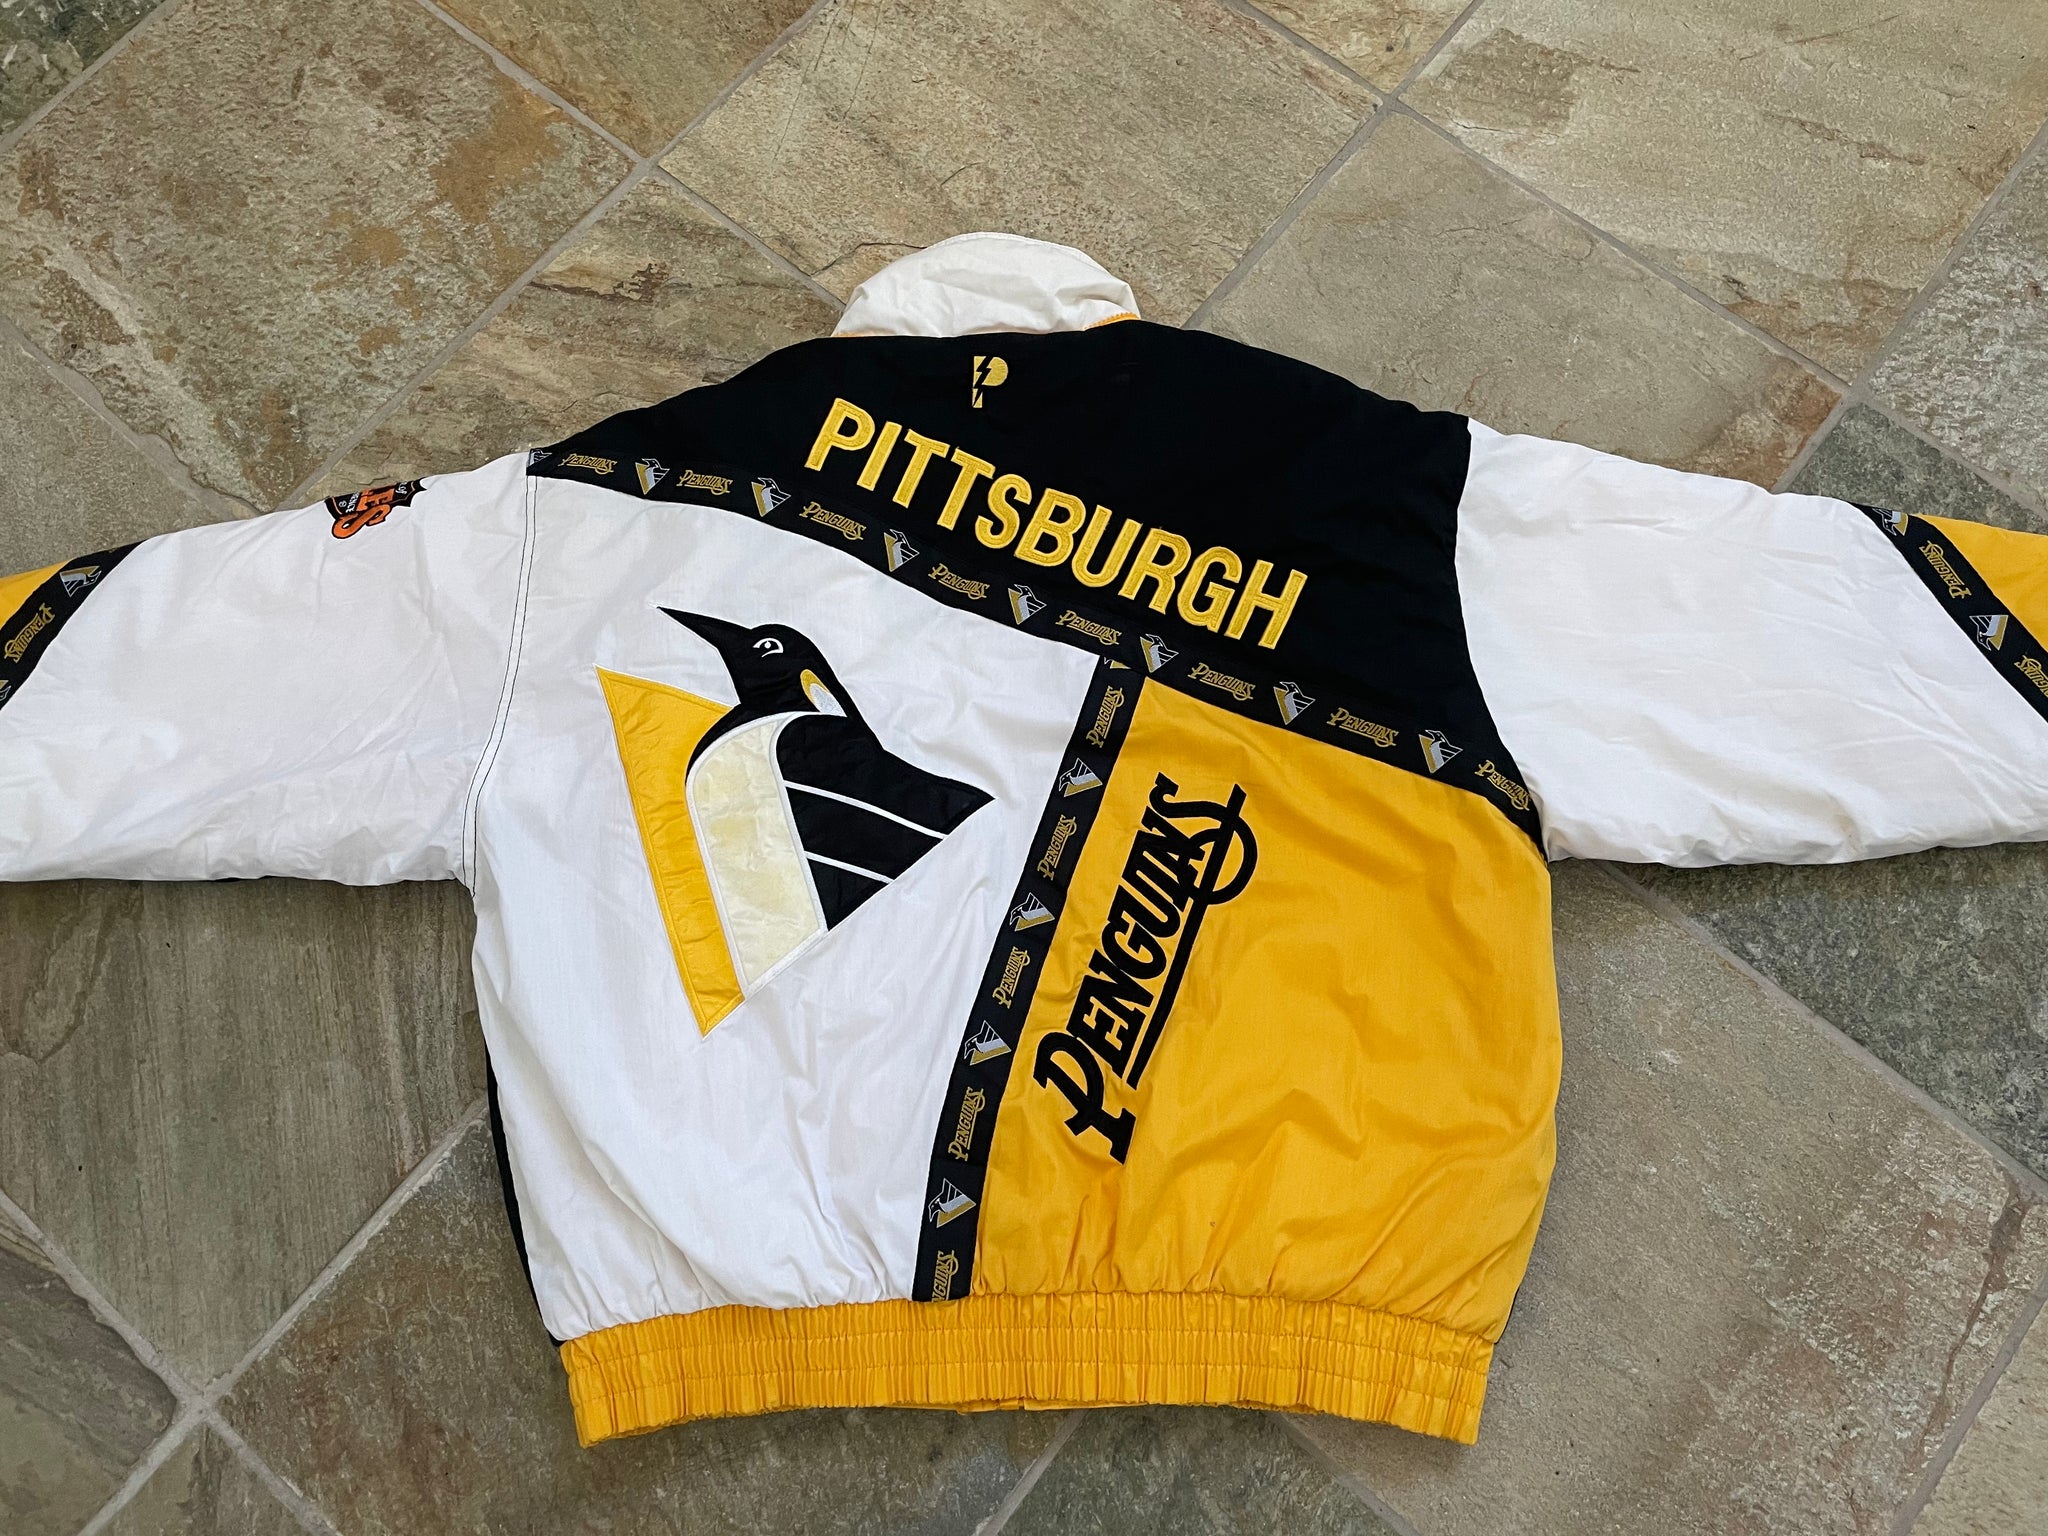 Vintage Starter - Pittsburgh Penguins Big Logo T-Shirt 1990s X-Large